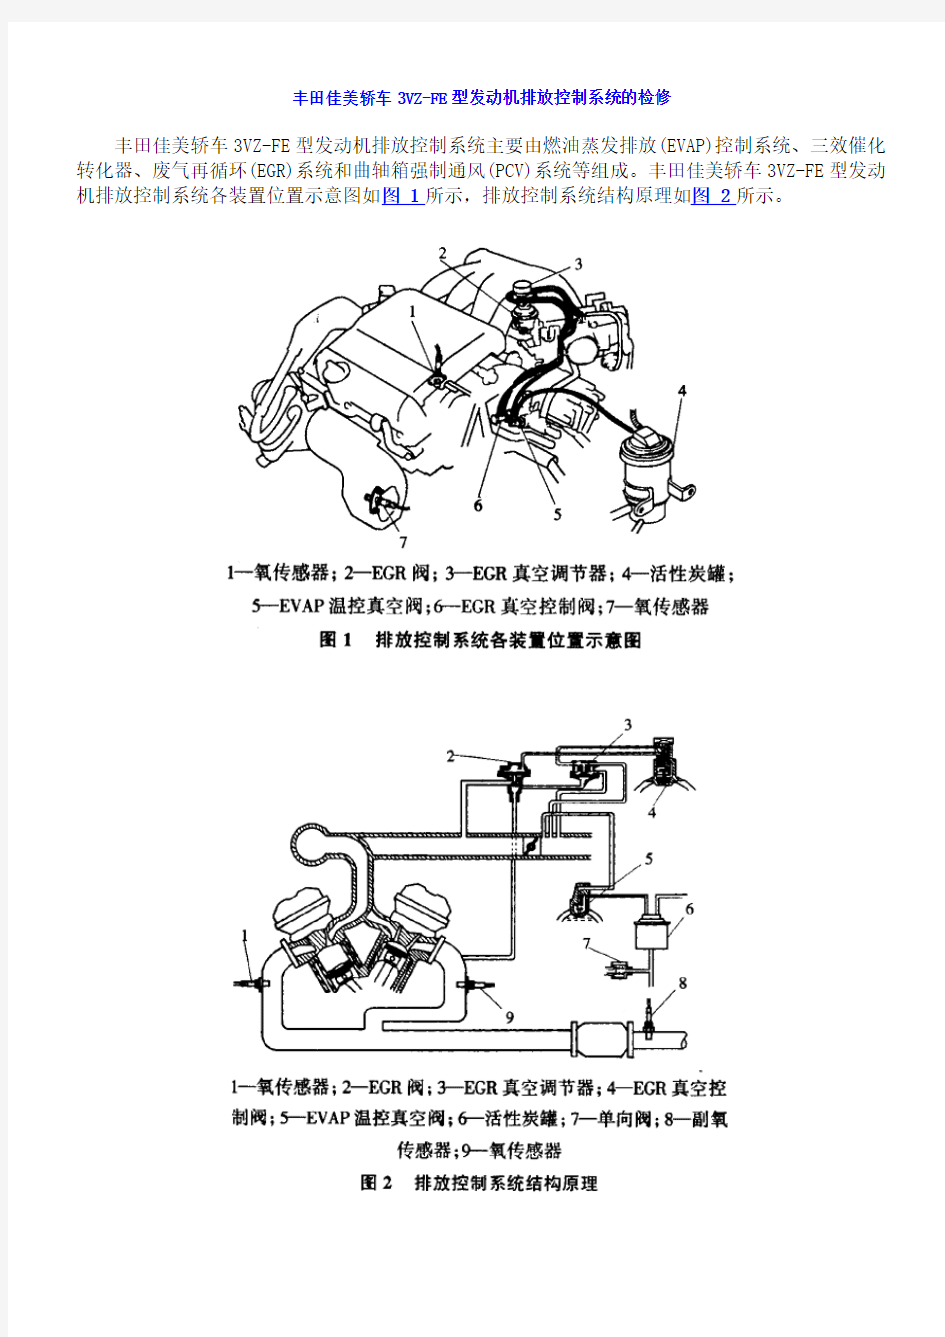 丰田佳美轿车3VZ-FE型发动机排放控制系统的检修